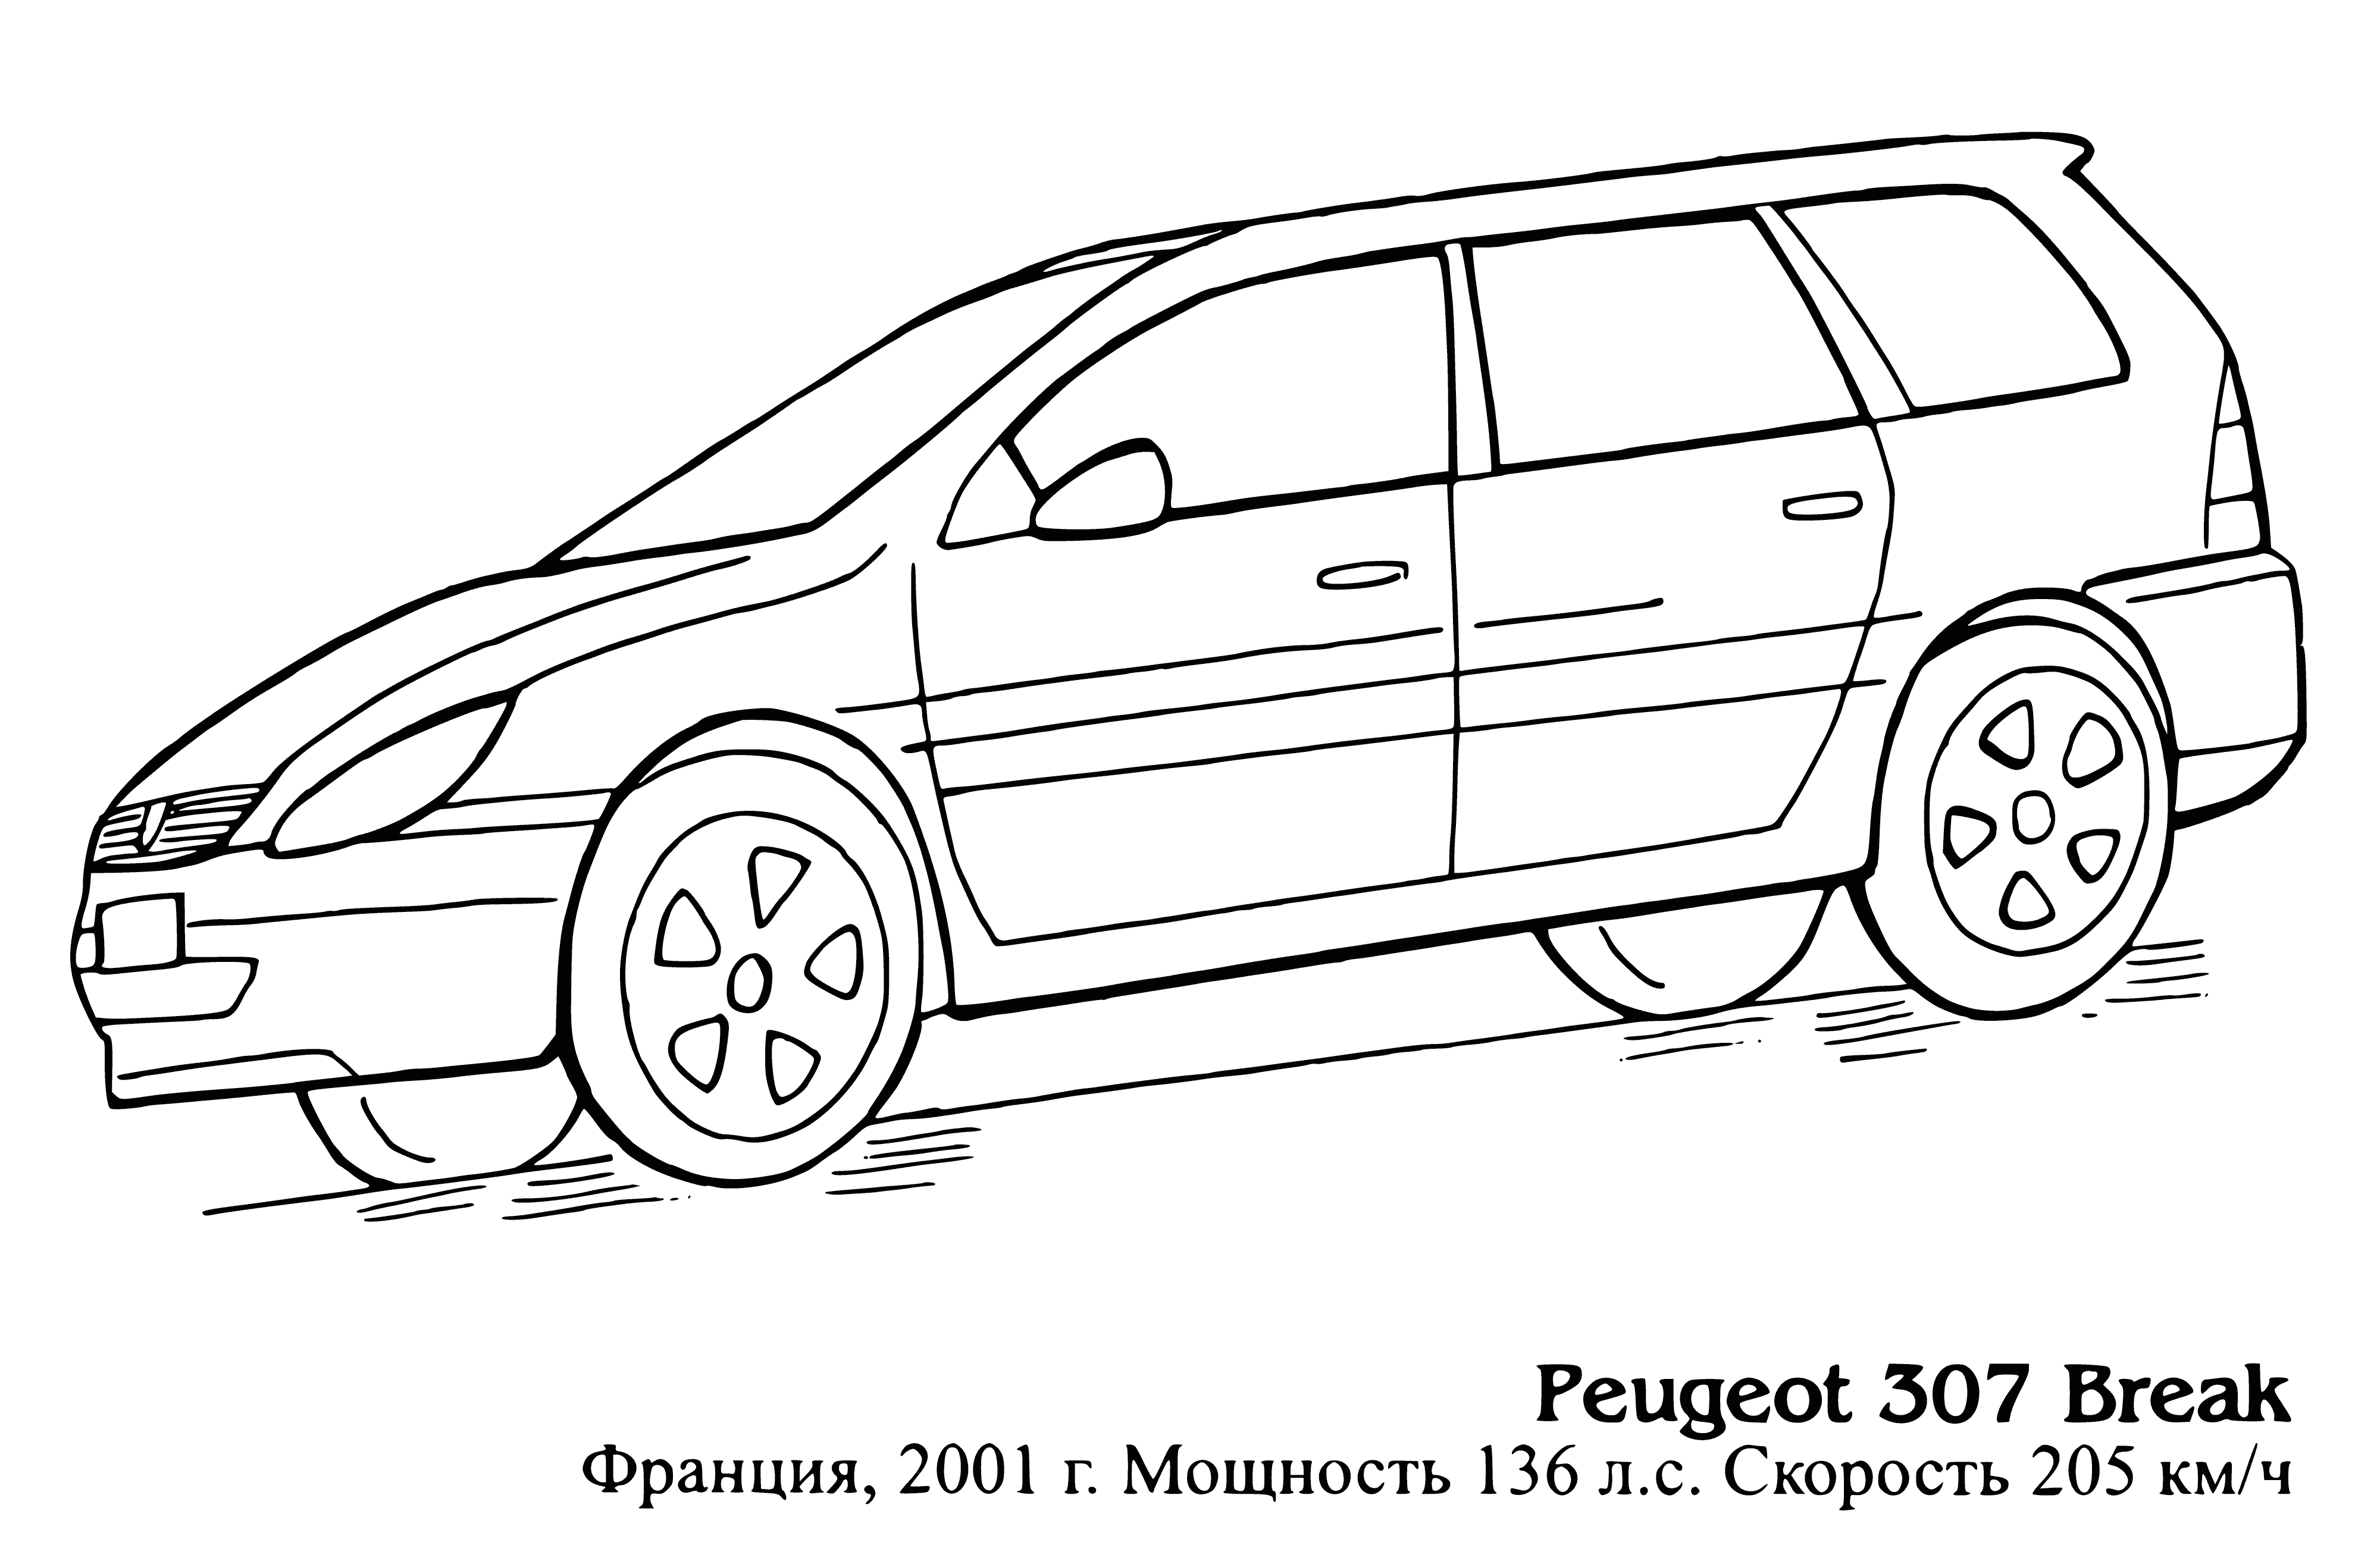 Peugeot 307 Arası boyama sayfası